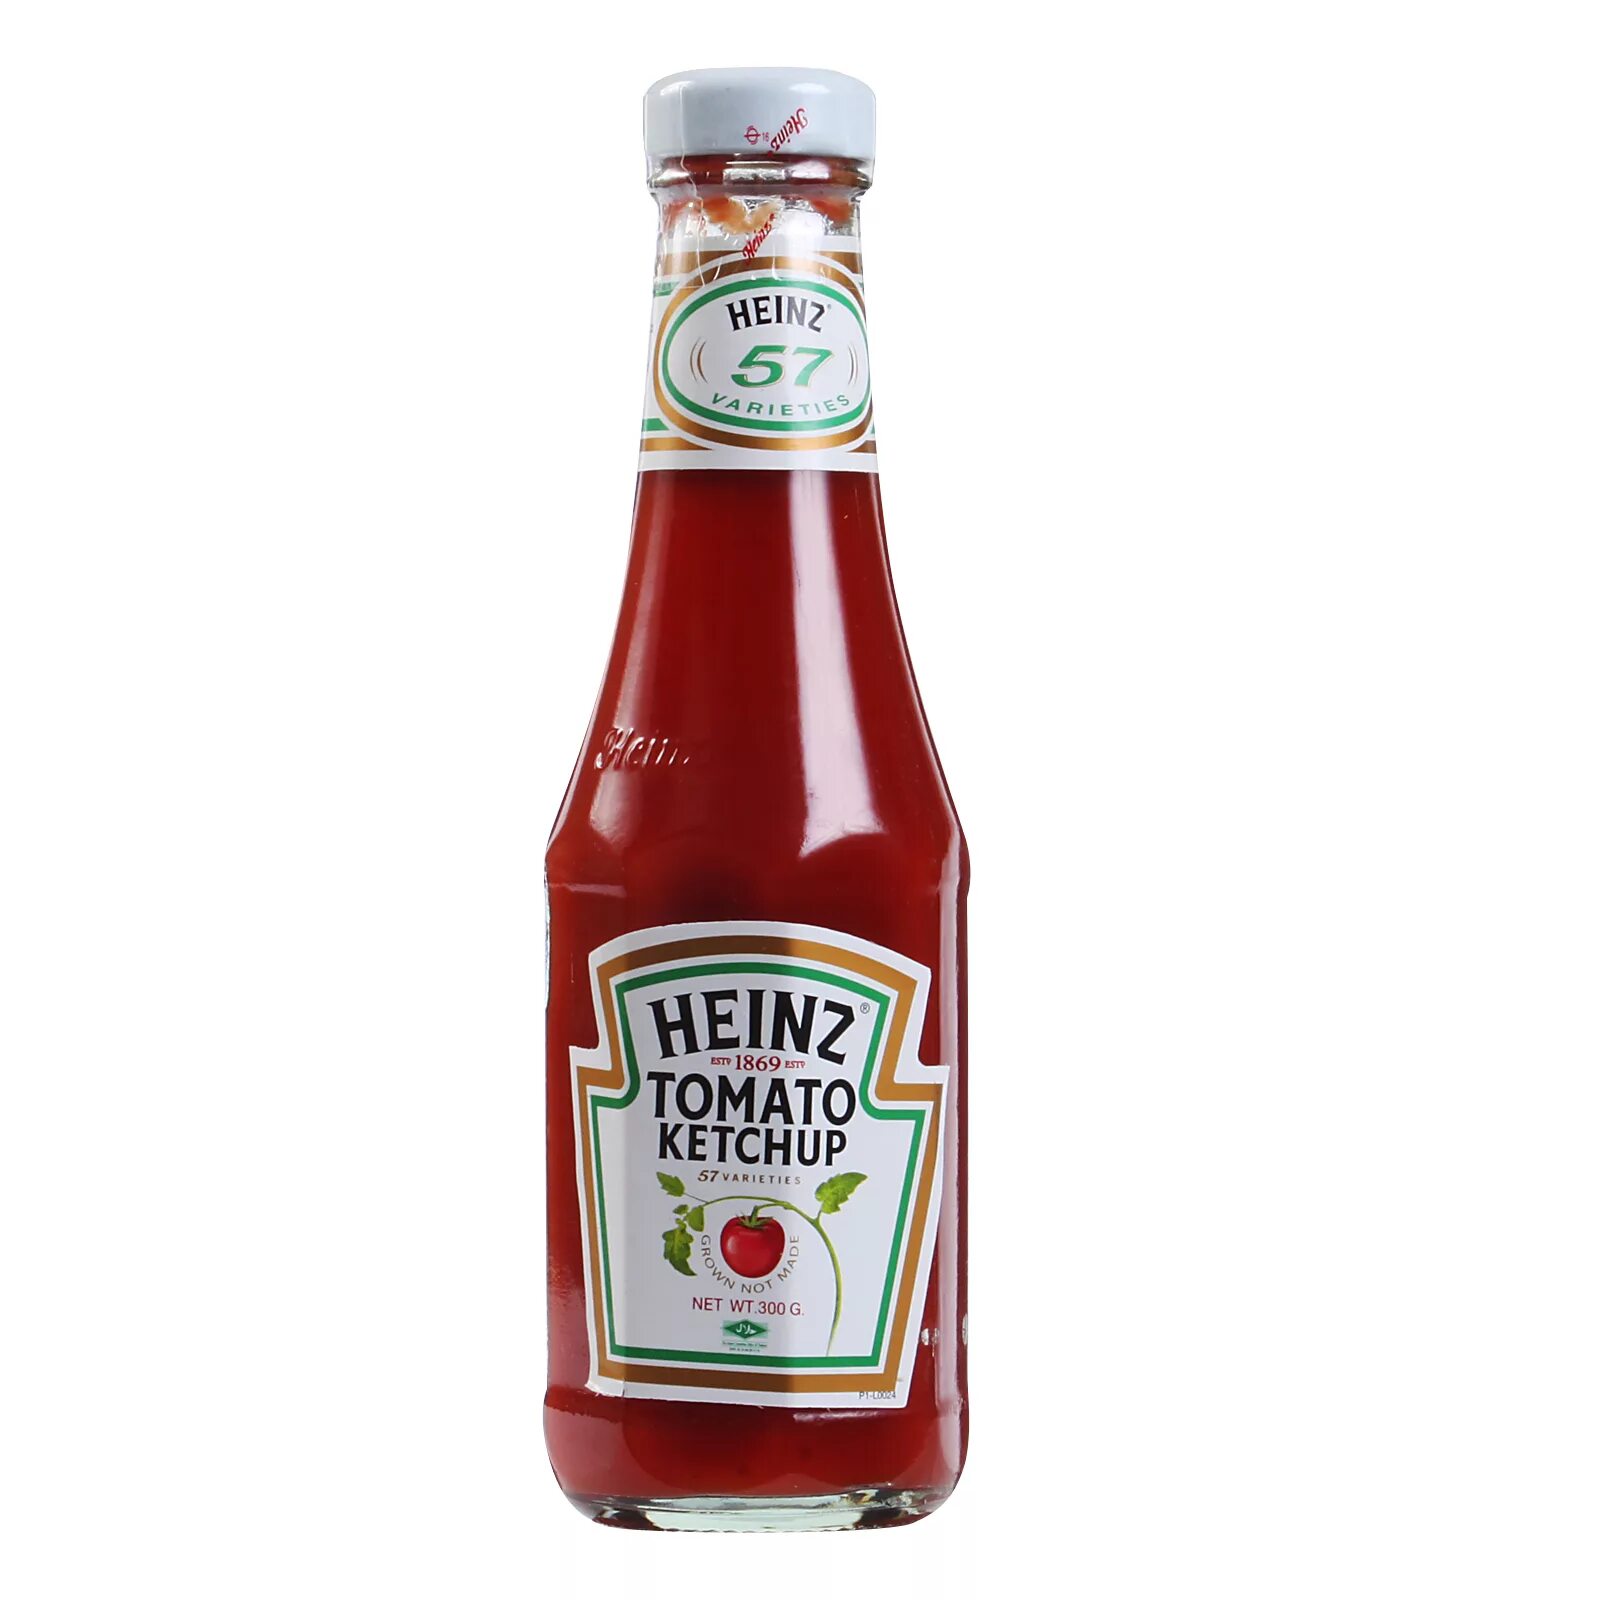 Tomato ketchup. Кетчуп Хайнц томатный. "Ketchup ""Heinz"" Tomato 570g  ". Heinz 800 томатный. Кетчуп Хайнц в стеклянной бутылке.